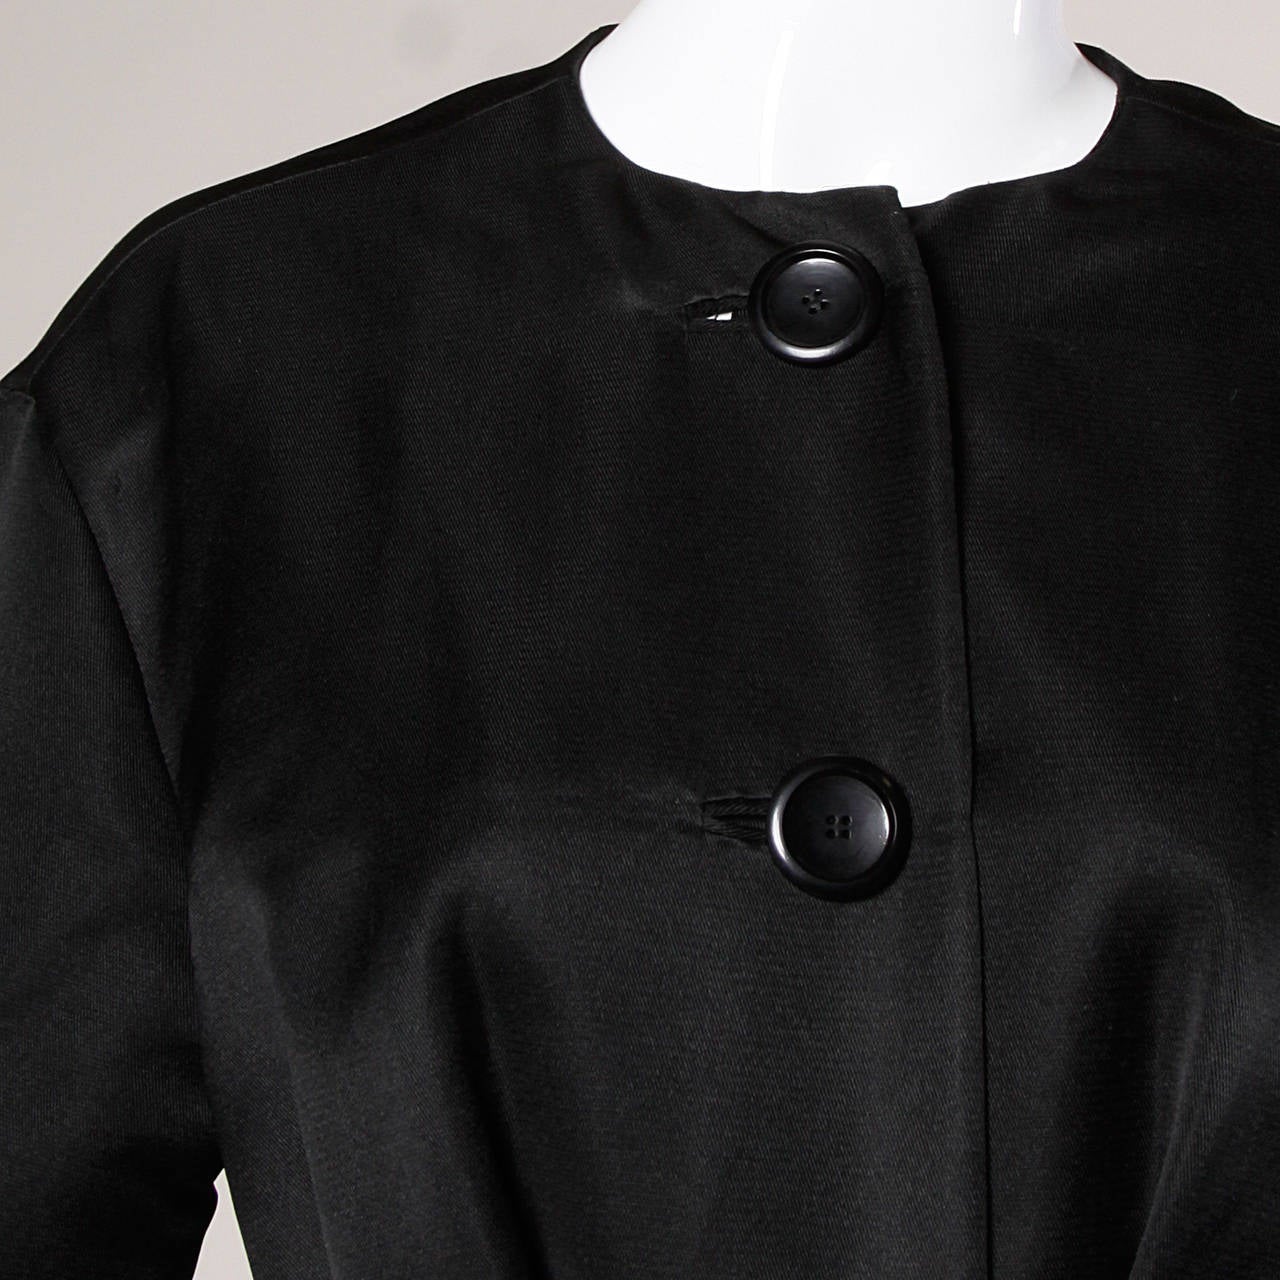 Black Haute Couture 1959 Yves Saint Laurent for Christian Dior Vintage Coat Dress